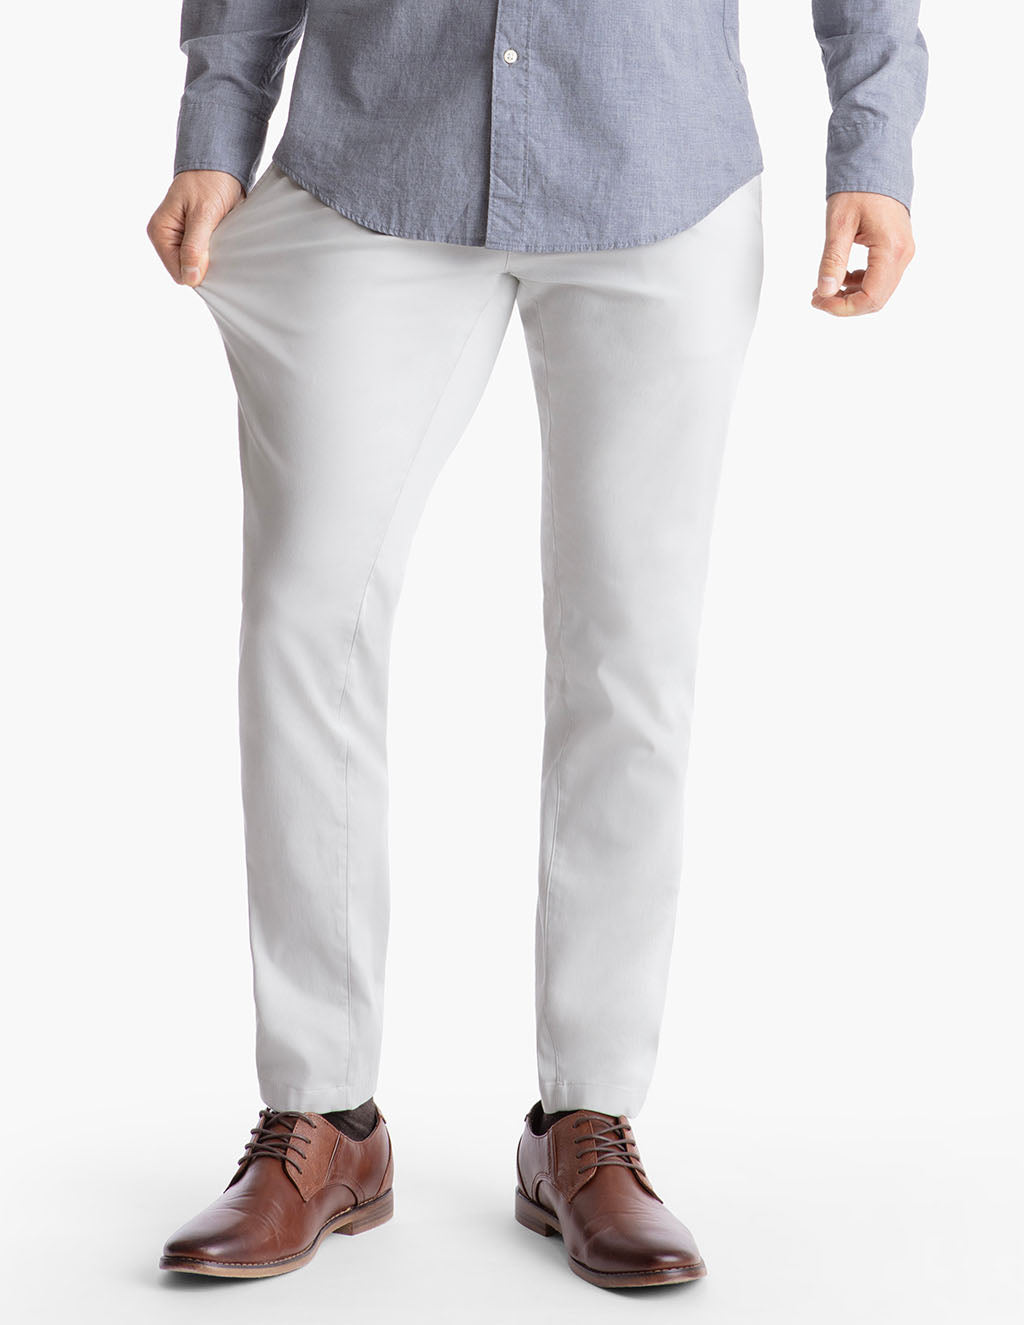 Buy Men's White Casual Pants Online at Bewakoof